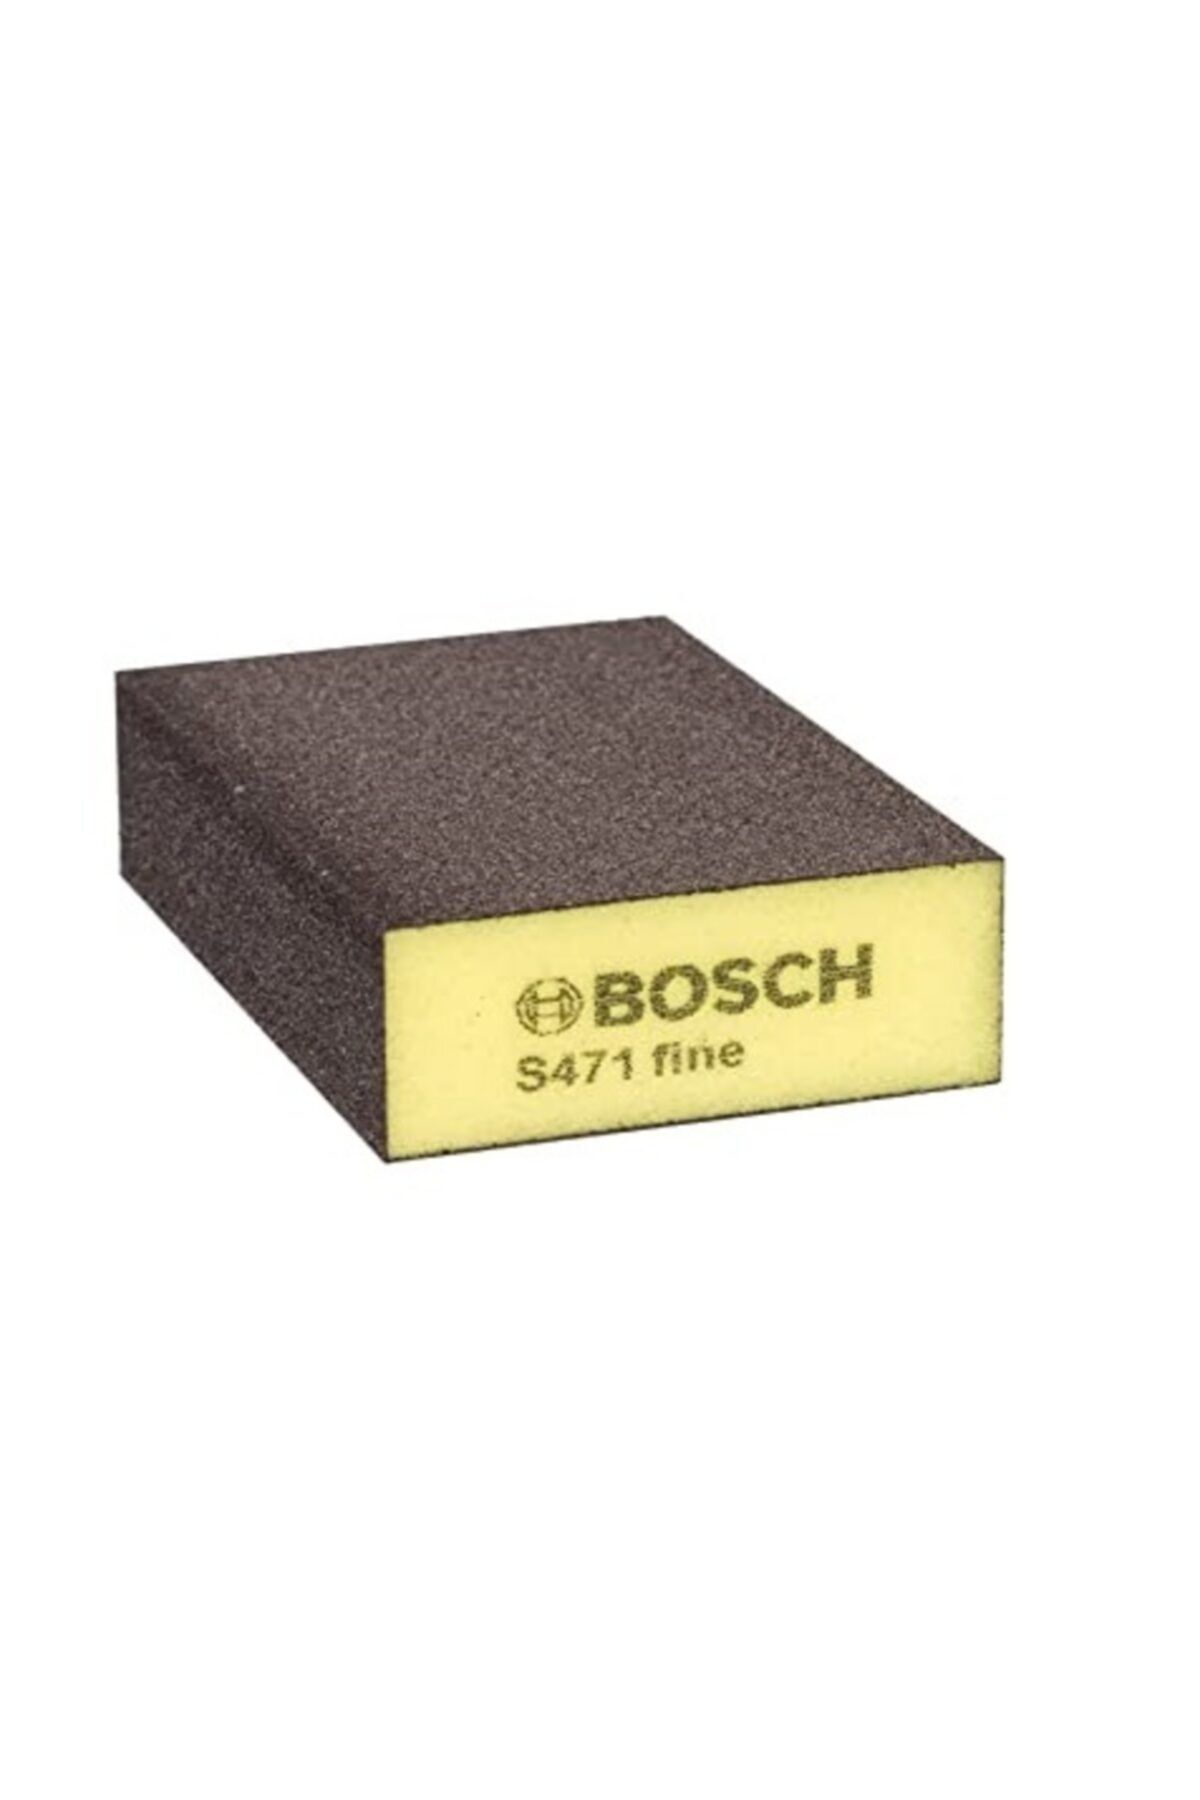 Bosch S471 Takoz Sünger Zımpara fine 100 Kum (2608608226)